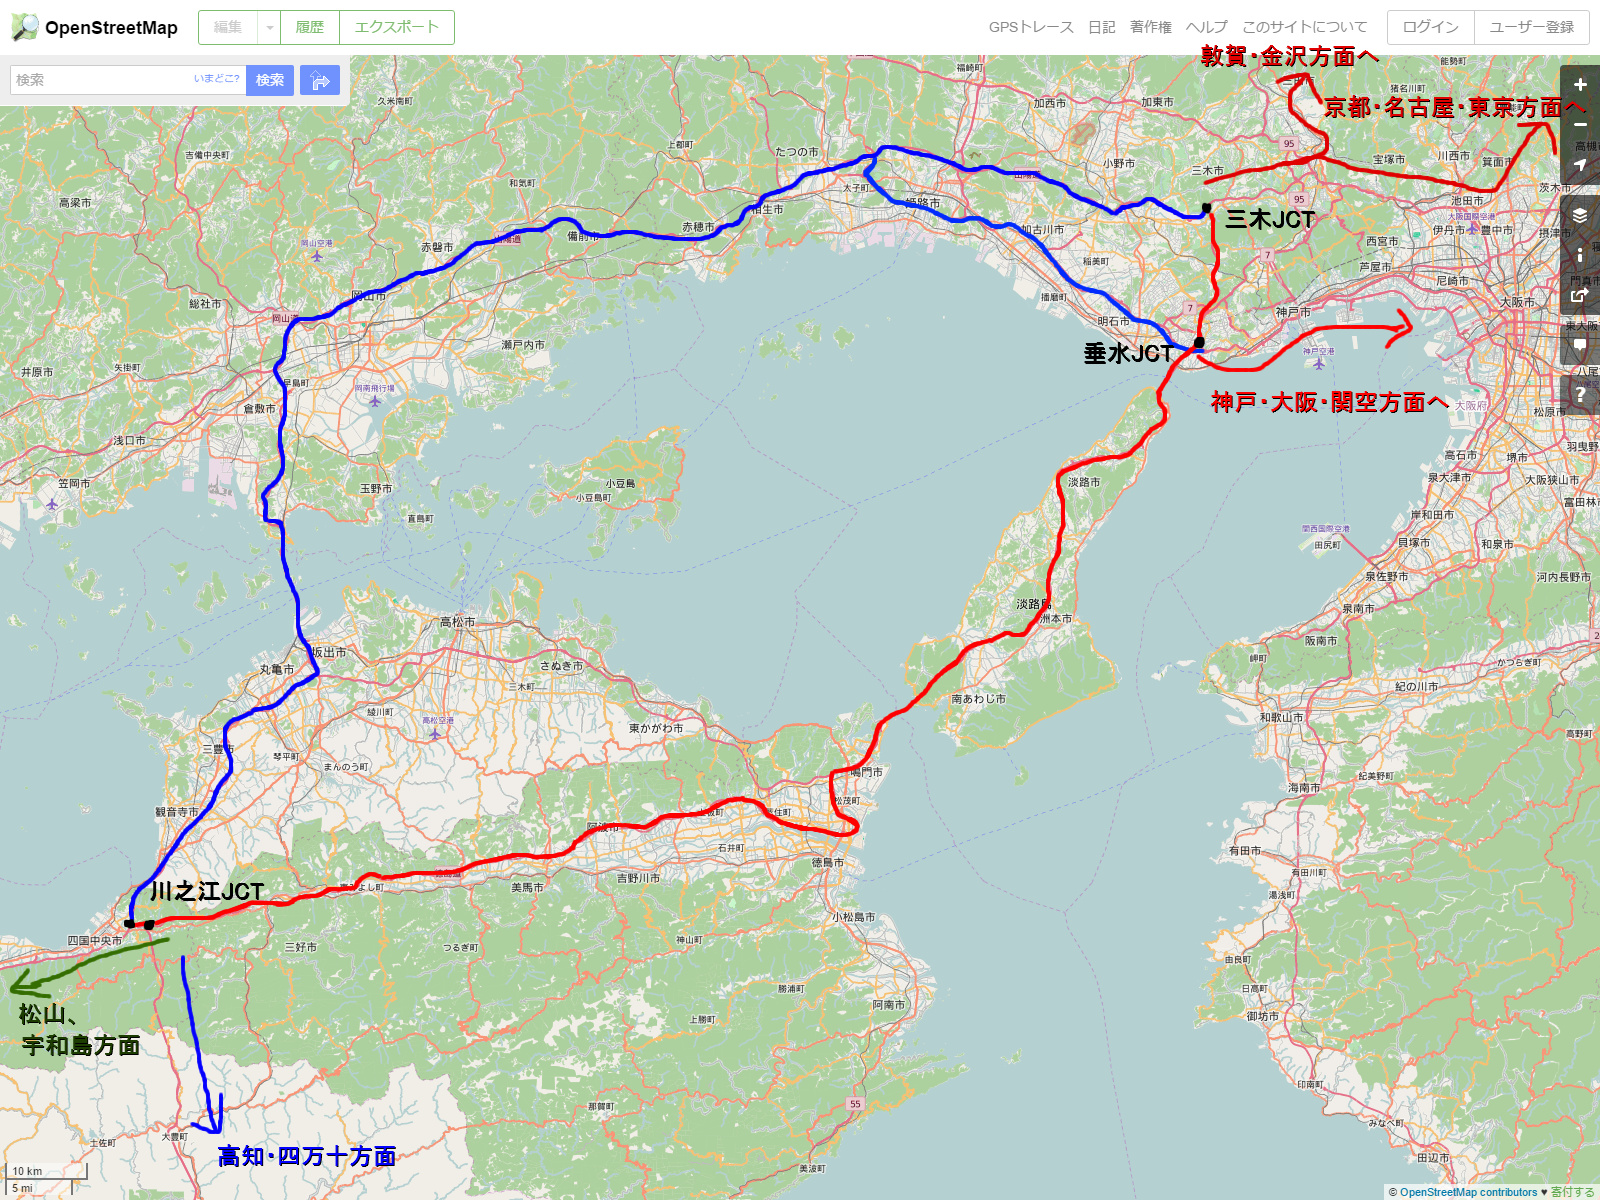 Rcp193の道路についてのブログ 道路以外もあります 愛媛 高知から関西へ行く場合 瀬戸大橋経由と明石海峡大橋経由 どちらを選んだほうが良いか